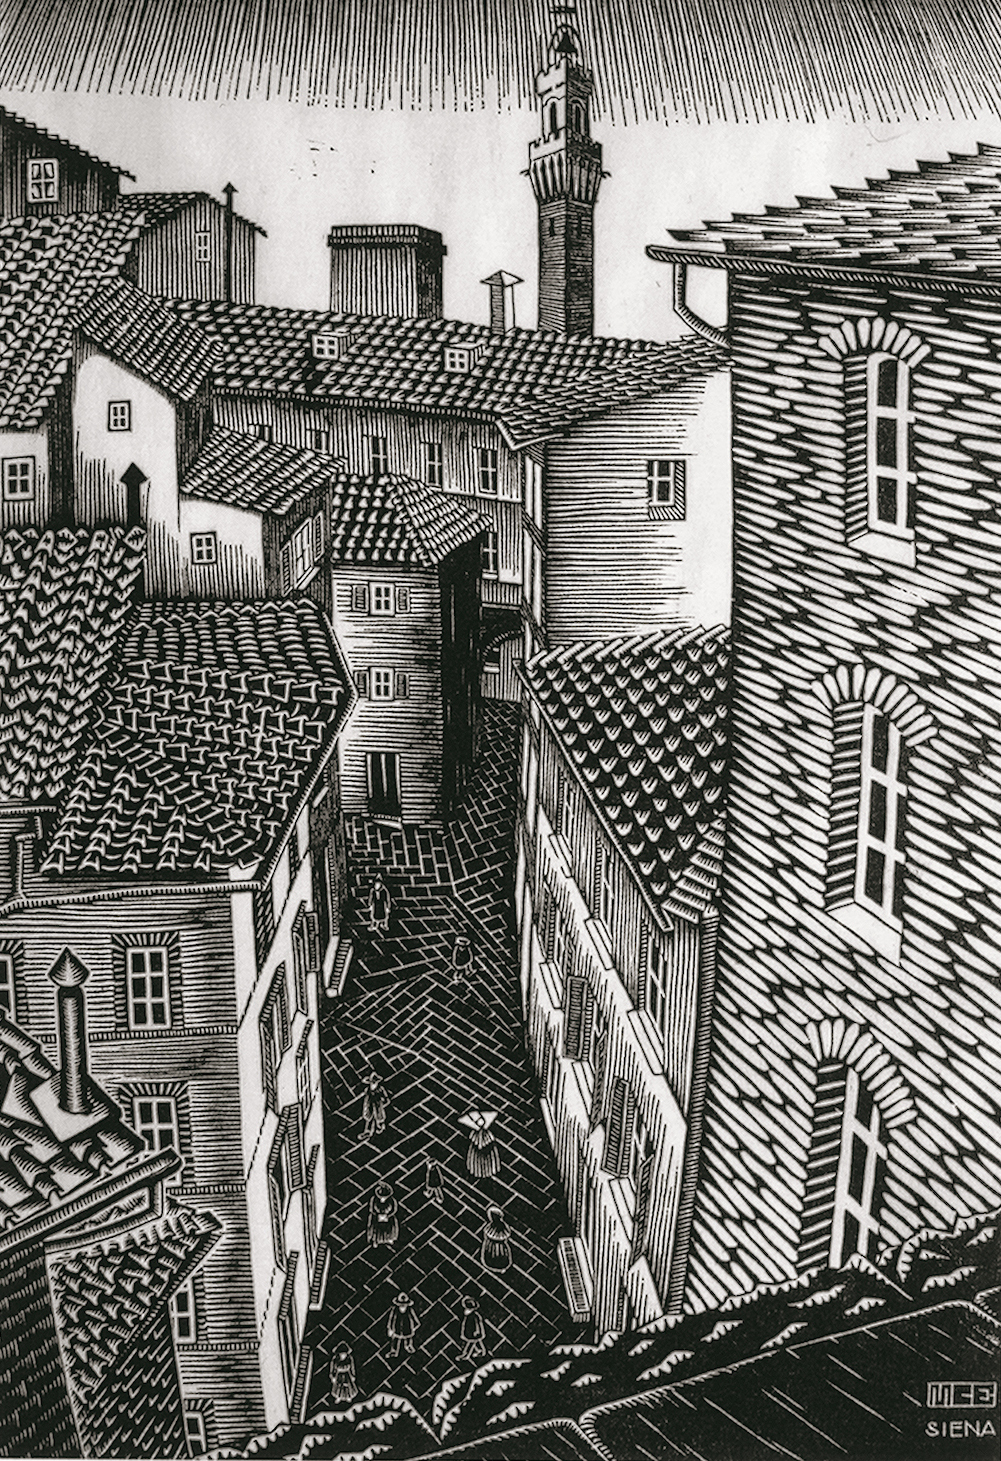 Maurits Cornelis Escher (Tetti di) Siena 1922 xilografia 323 x 219 mm Collezione Federico Giudiceandrea All M.C. Escher works © 2014 The M.C. Escher Company. All rights reserved www.mcescher.com